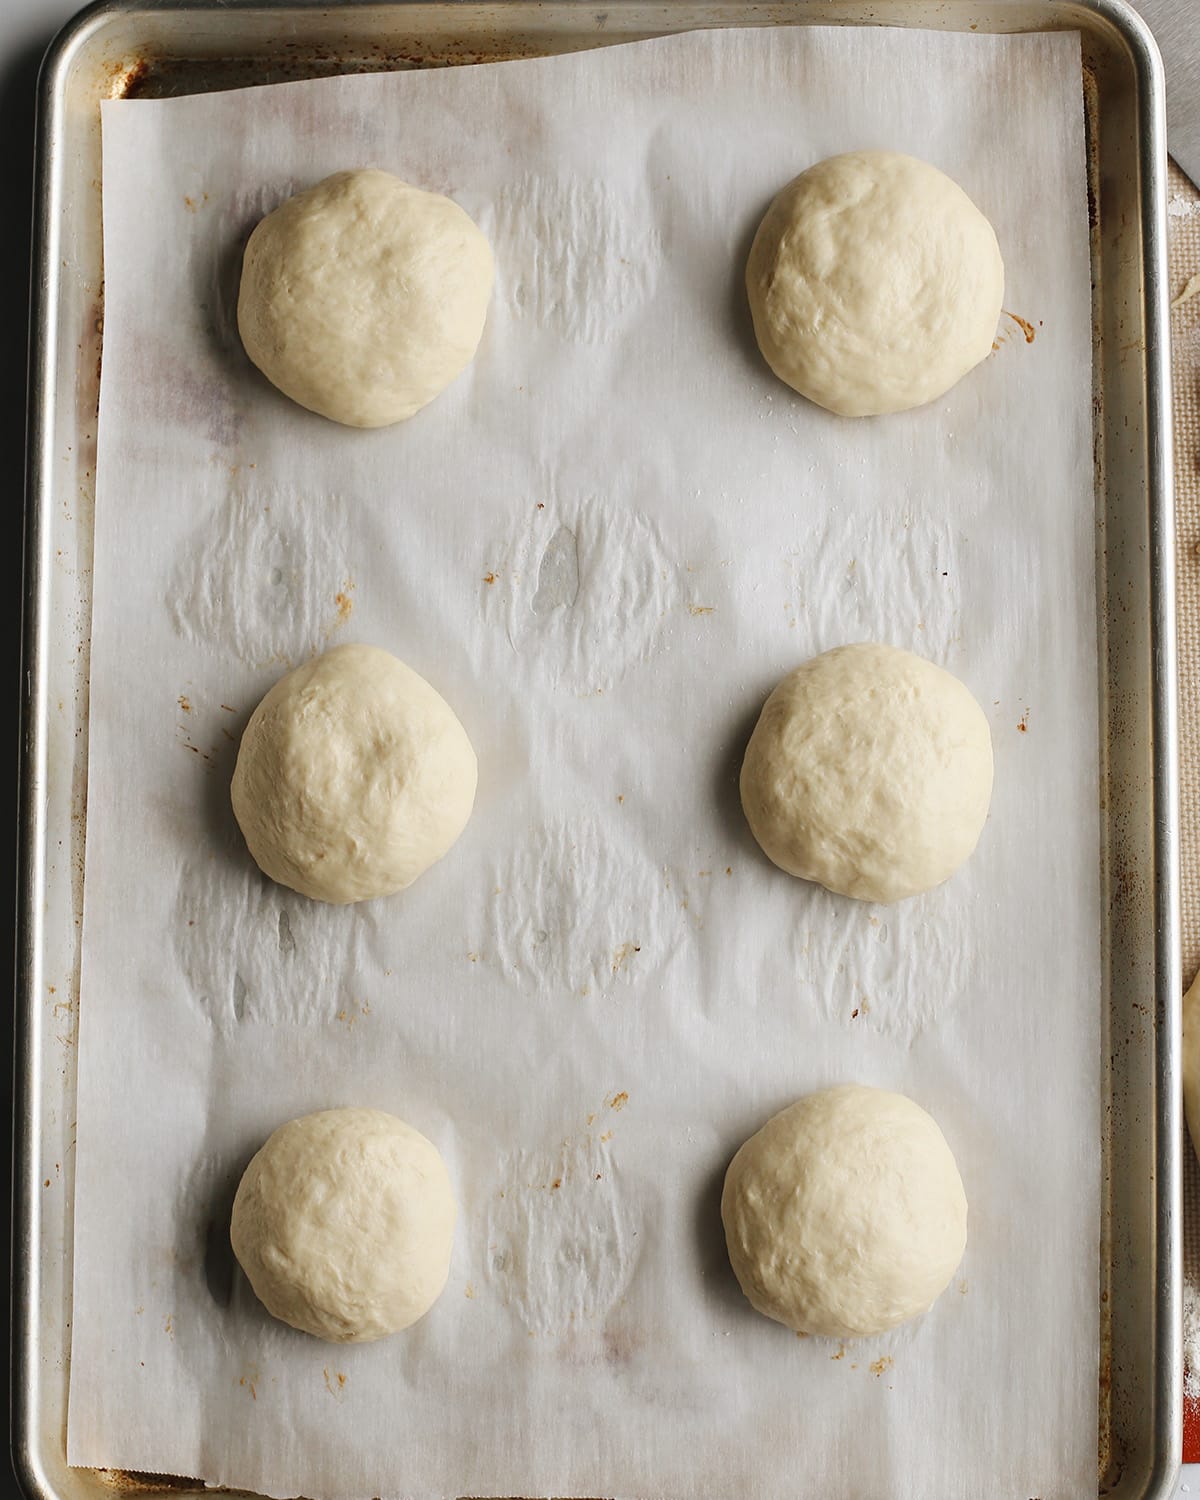 How to Make Homemade Hamburger Buns - buns rising on baking sheet